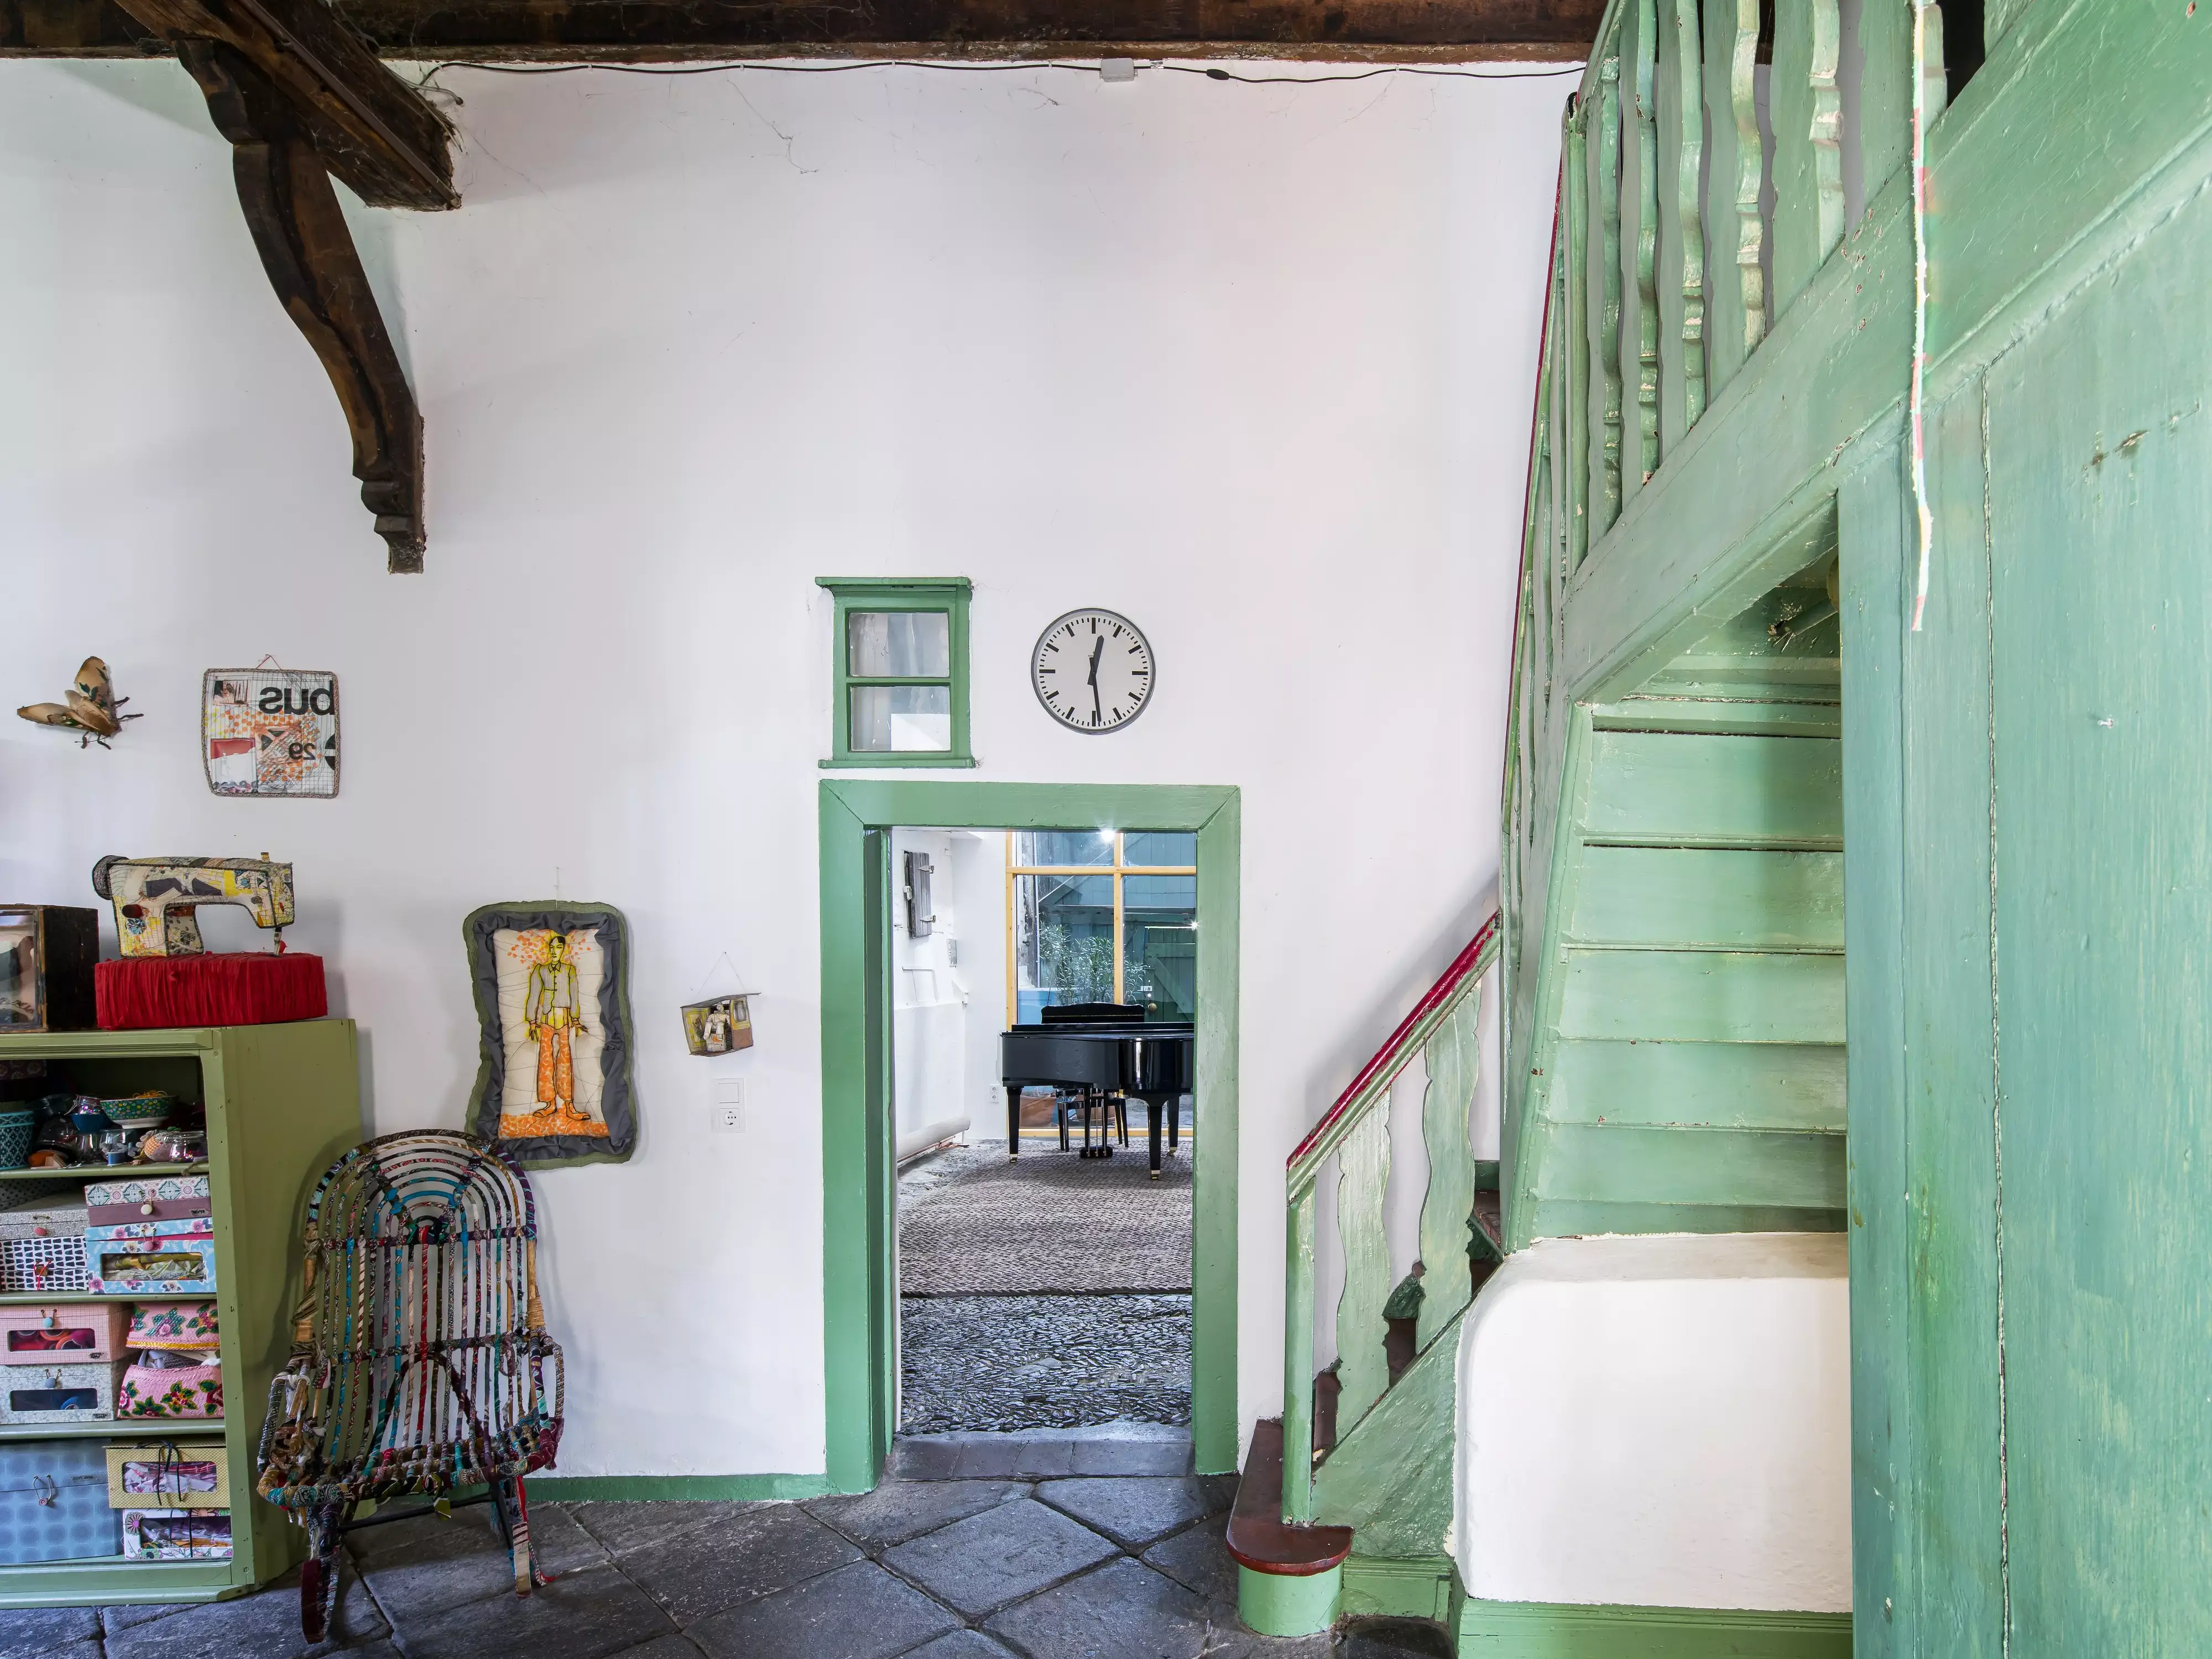 Escalier vintage vert en bois dans une maison rustique avec un décor éclectique et un grand piano visible.